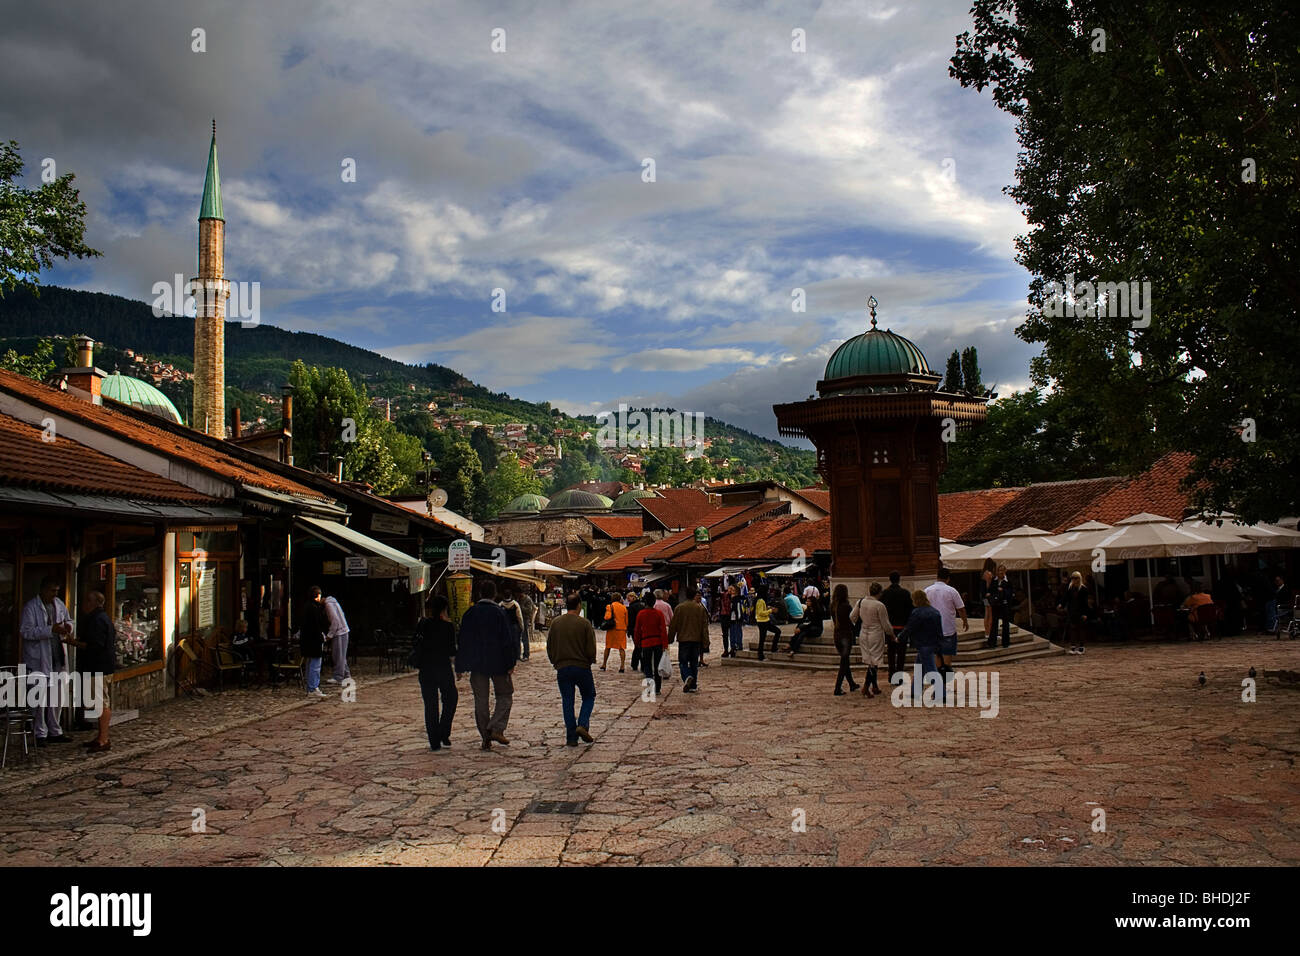 Sarajevo, Bosnien Balcan, balkan, Stadt, regnerisch, Tag. tagsüber, Leben, Markt, Bazar, Souk, Souk, Suq, Moschee, Minarett Stockfoto